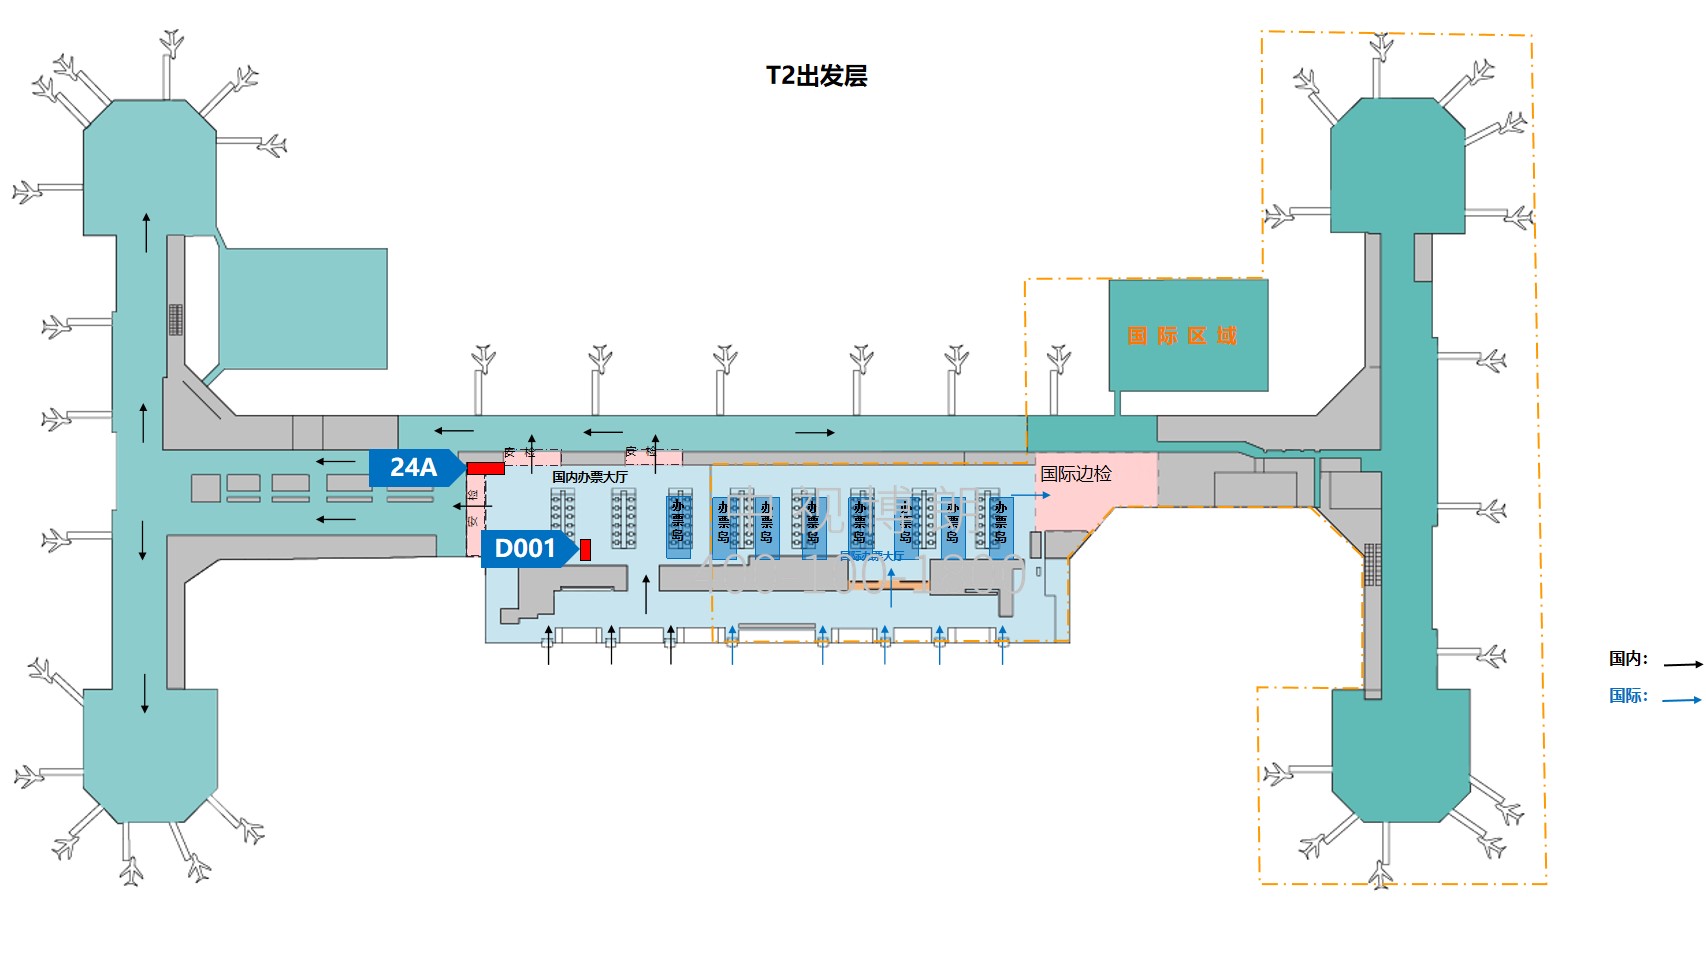 北京首都机场广告-T2 Domestic Departure Corridor Light Box Set位置图